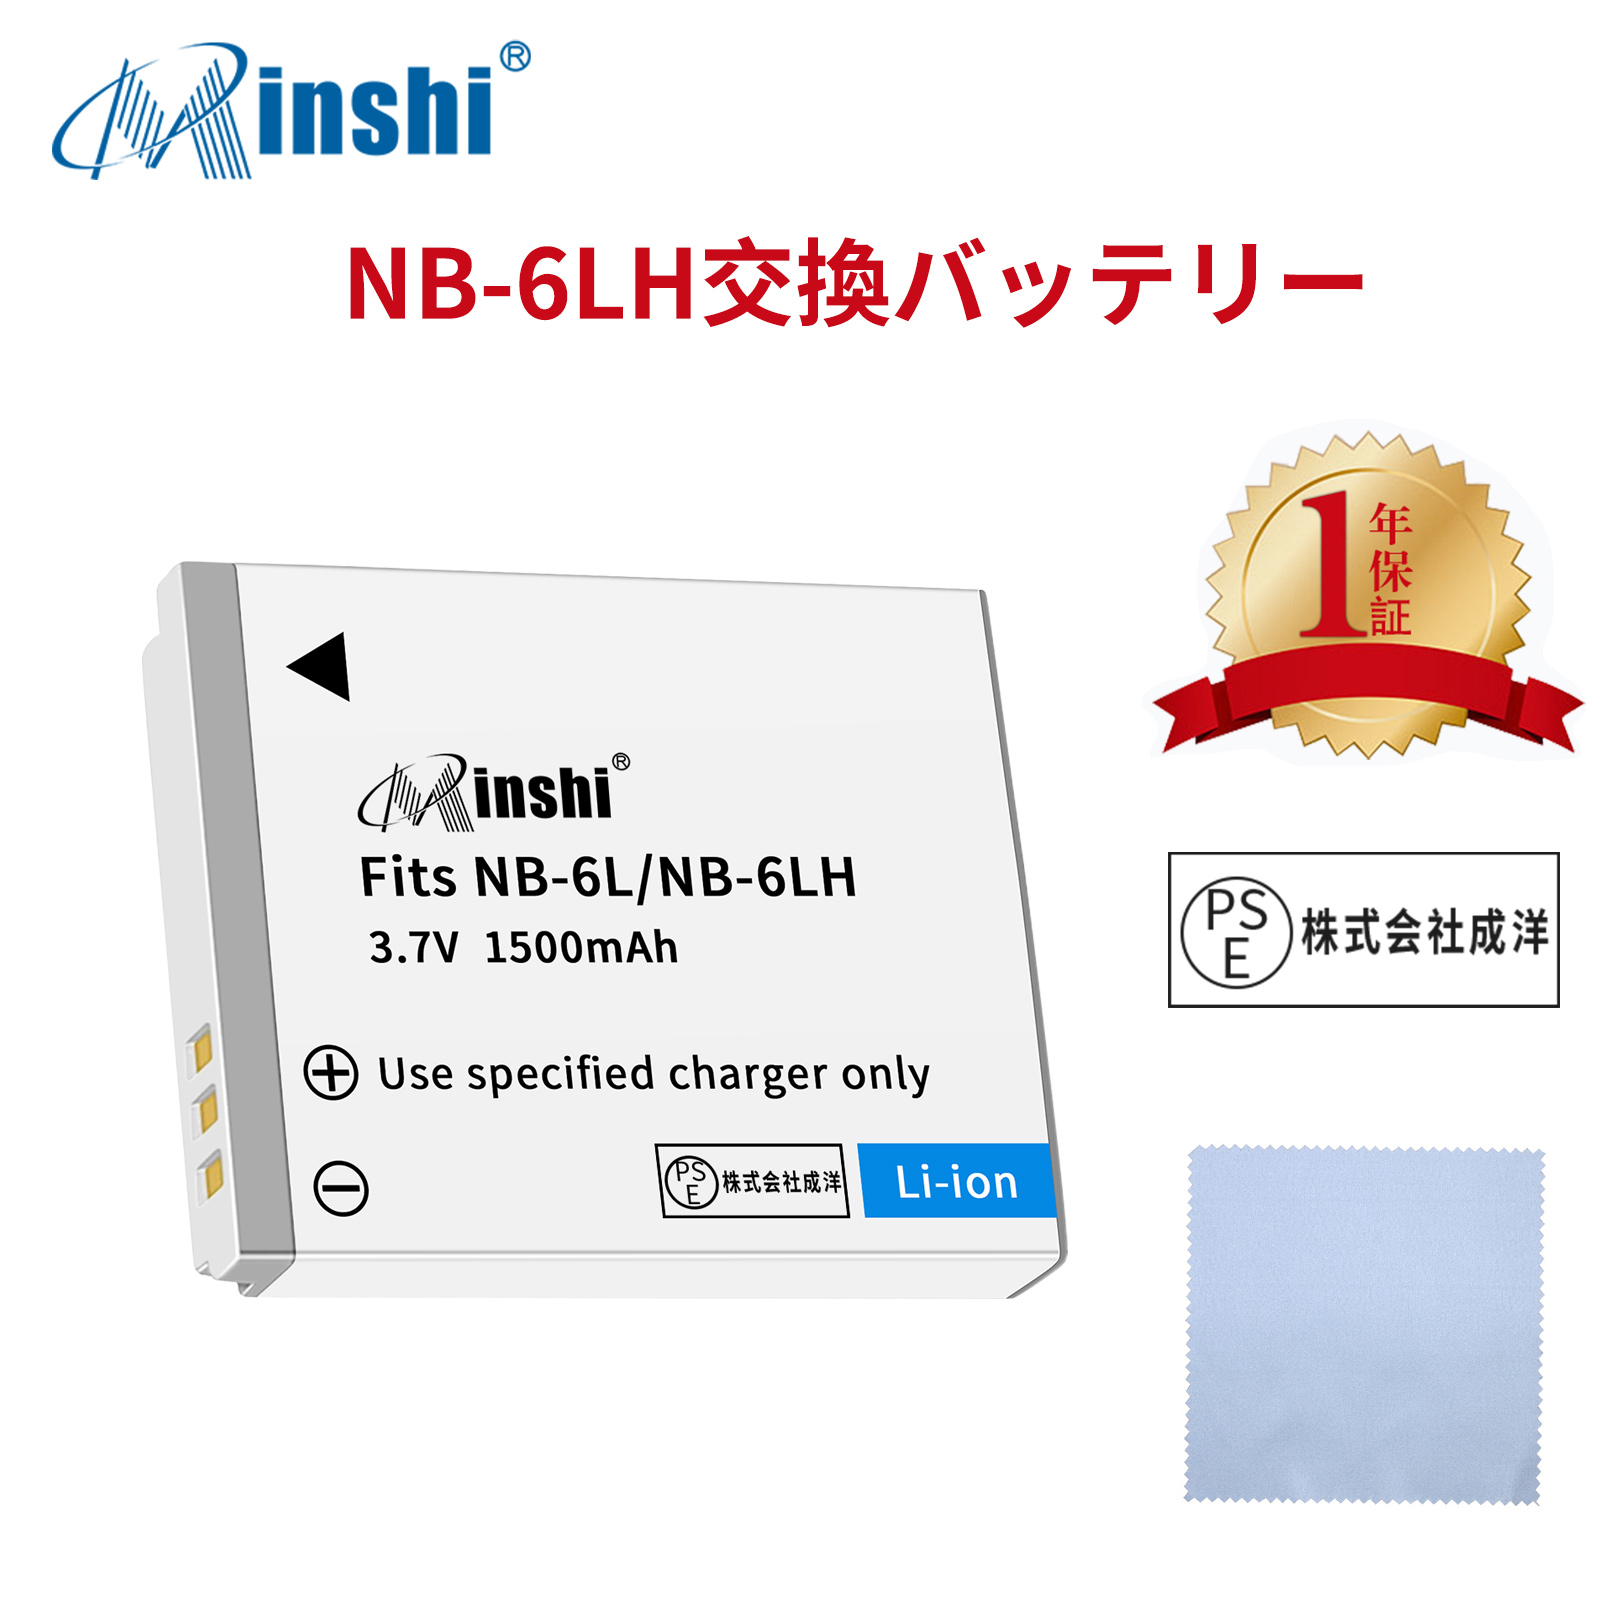 【清潔布ー付】minshi Canon IXUS 200 IS  NB-6LH NB-6L 対応 1500mAh  高品質NB-6LHNB-6LH NB-6L互換バッテリーPHB